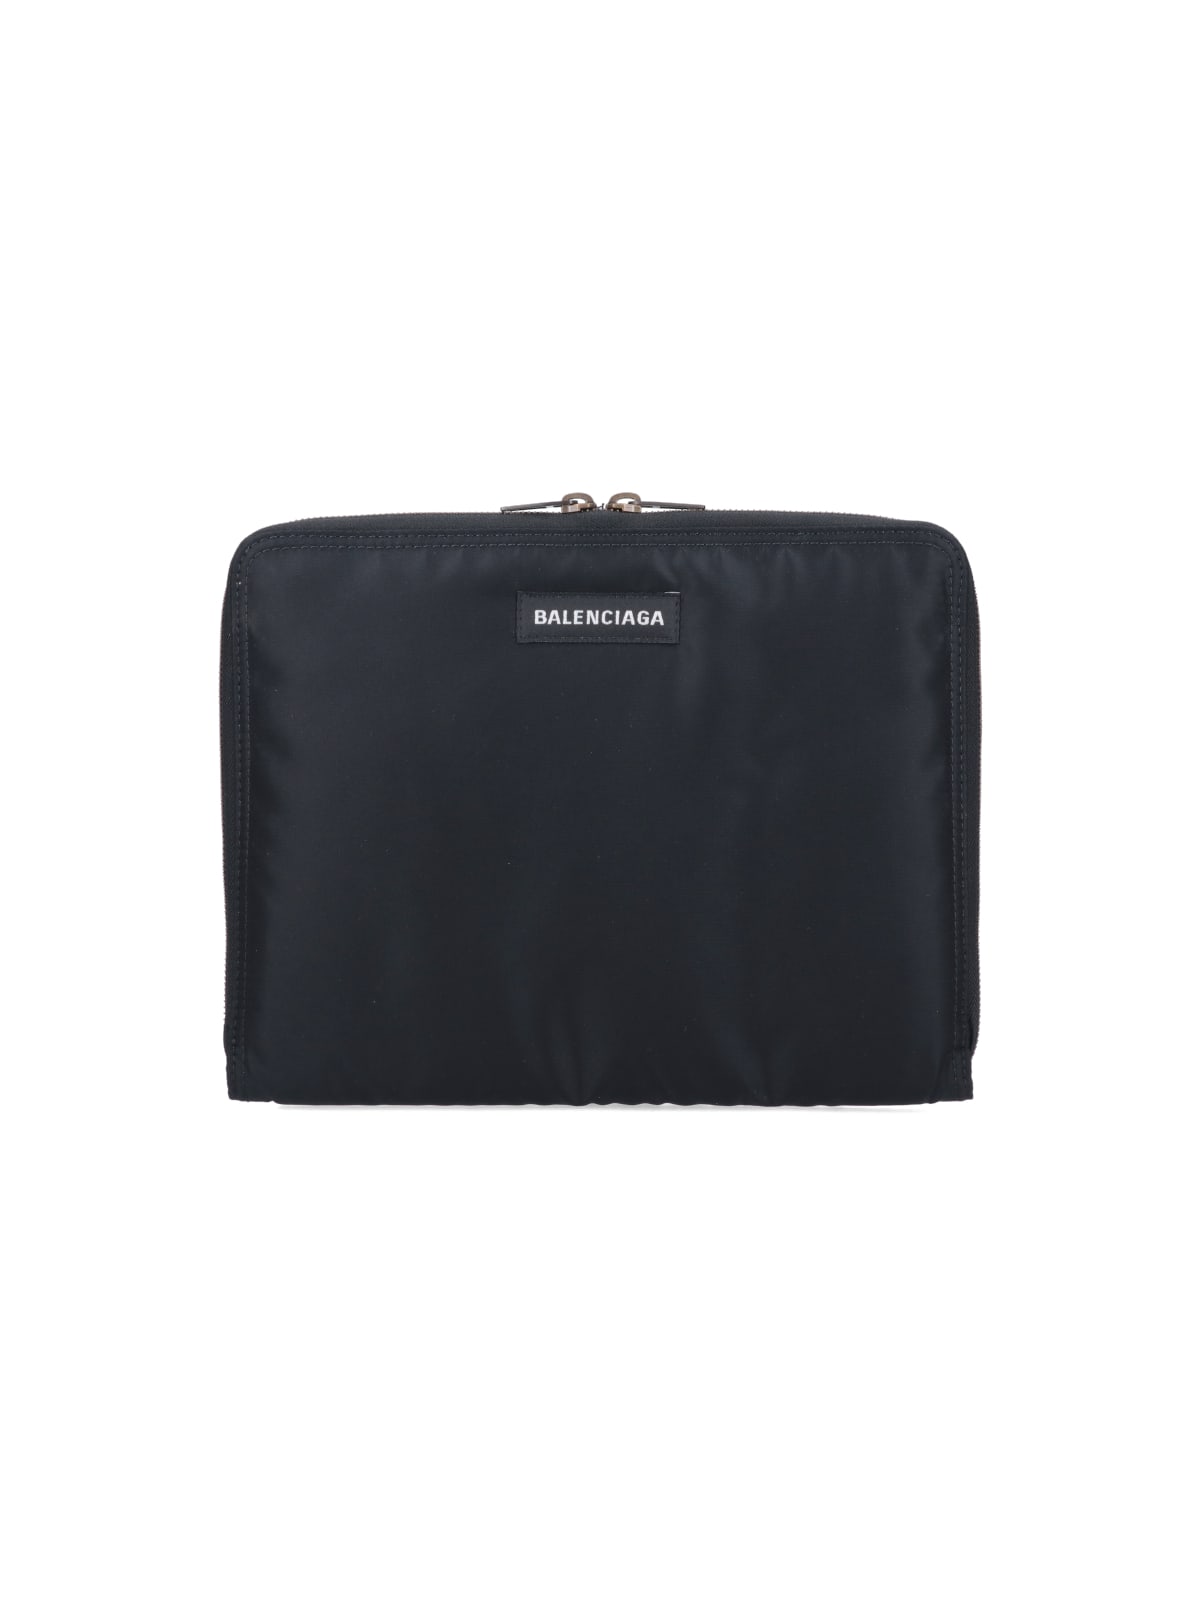 Balenciaga Ipad Case Bag In | ModeSens